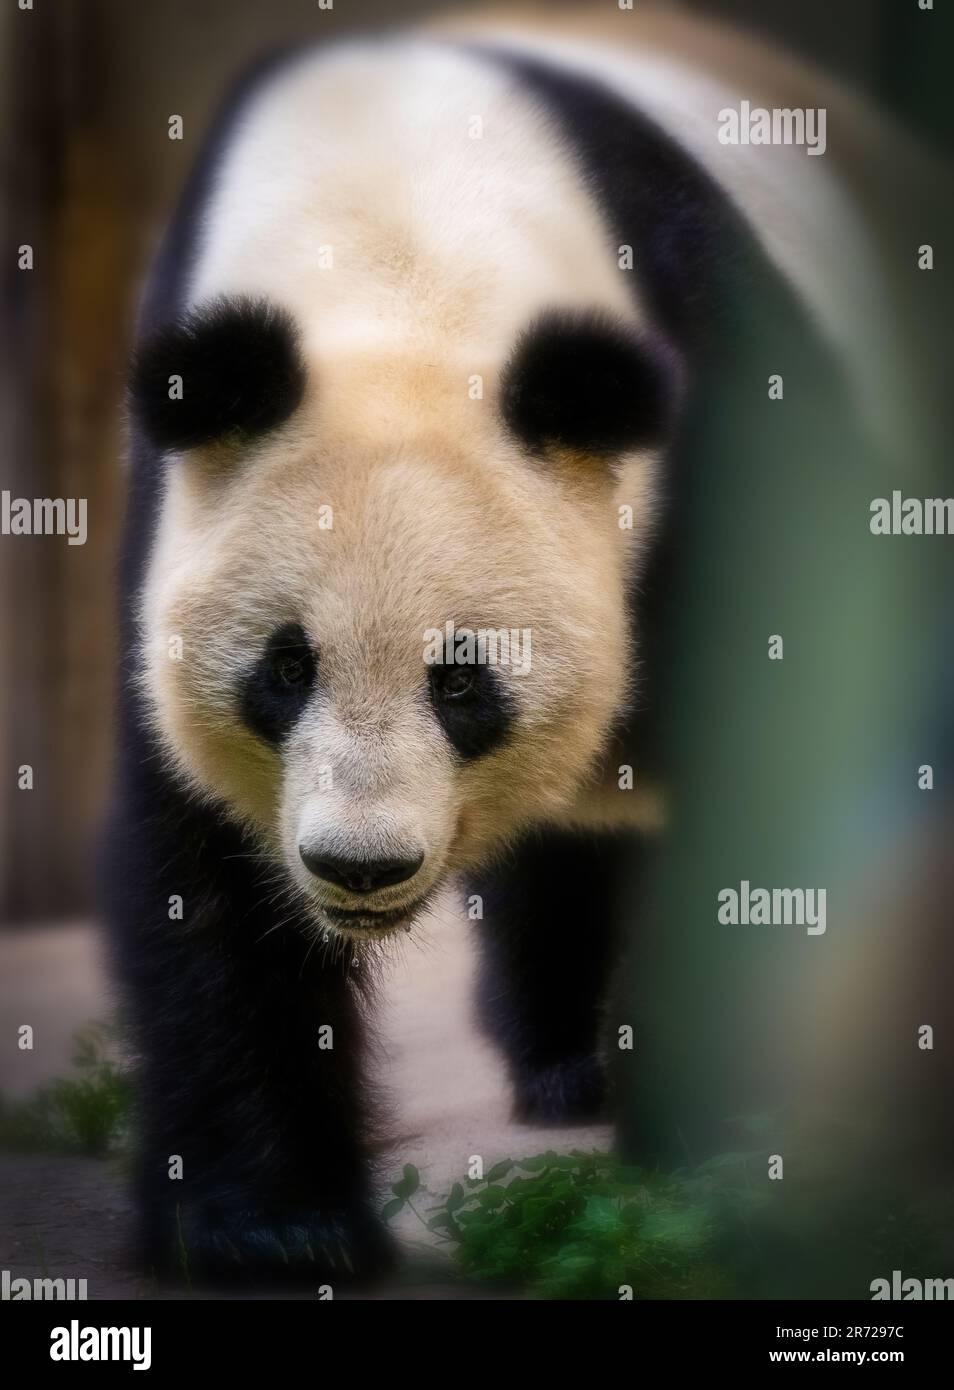 Nahaufnahme eines hungrigen, spalivierenden Pandabären, der in china in die Kamera schaut Stockfoto